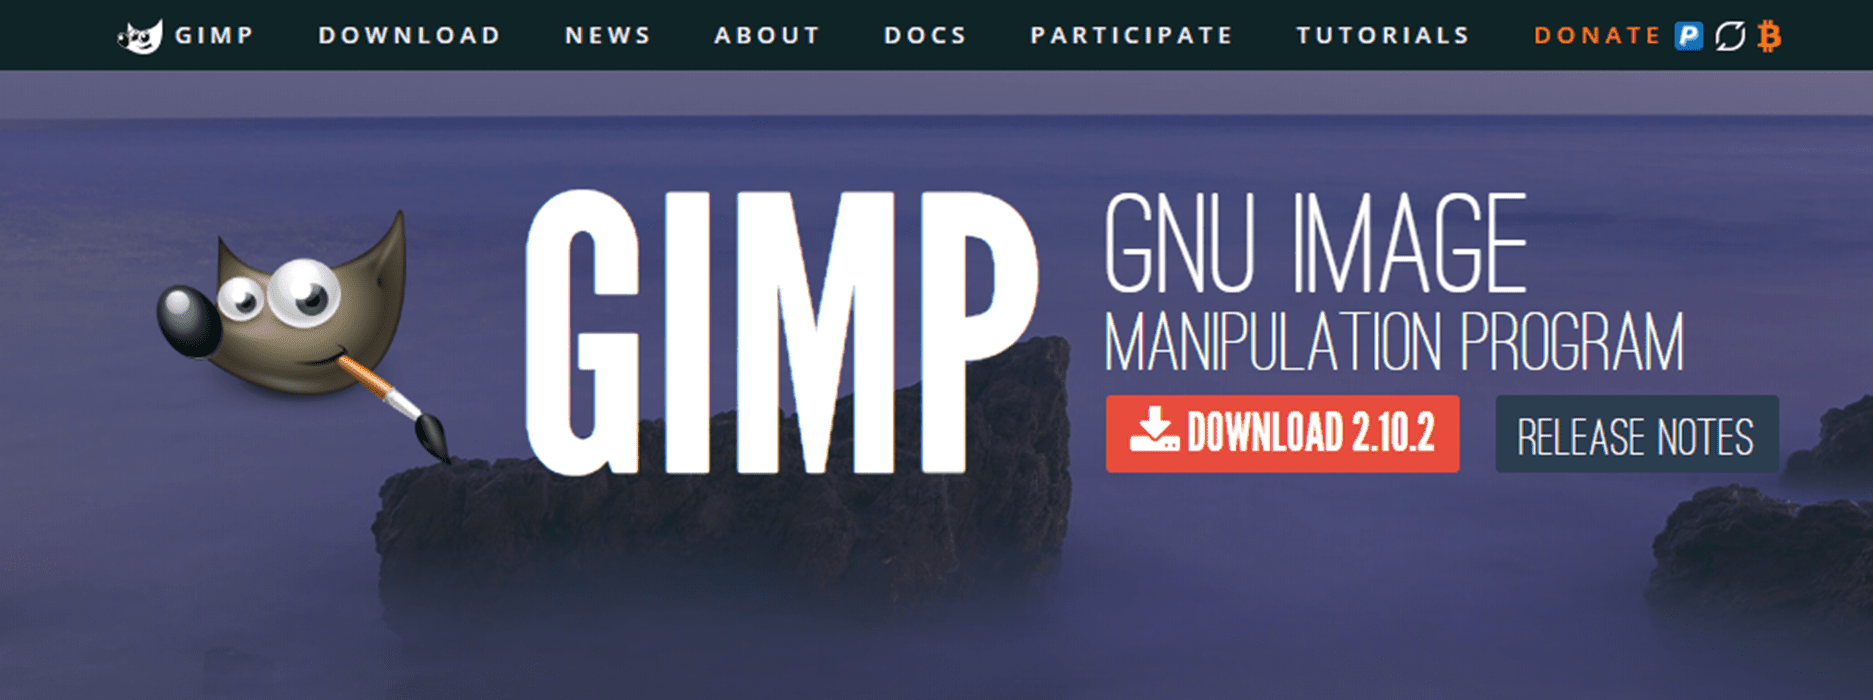 program like gimp for mac